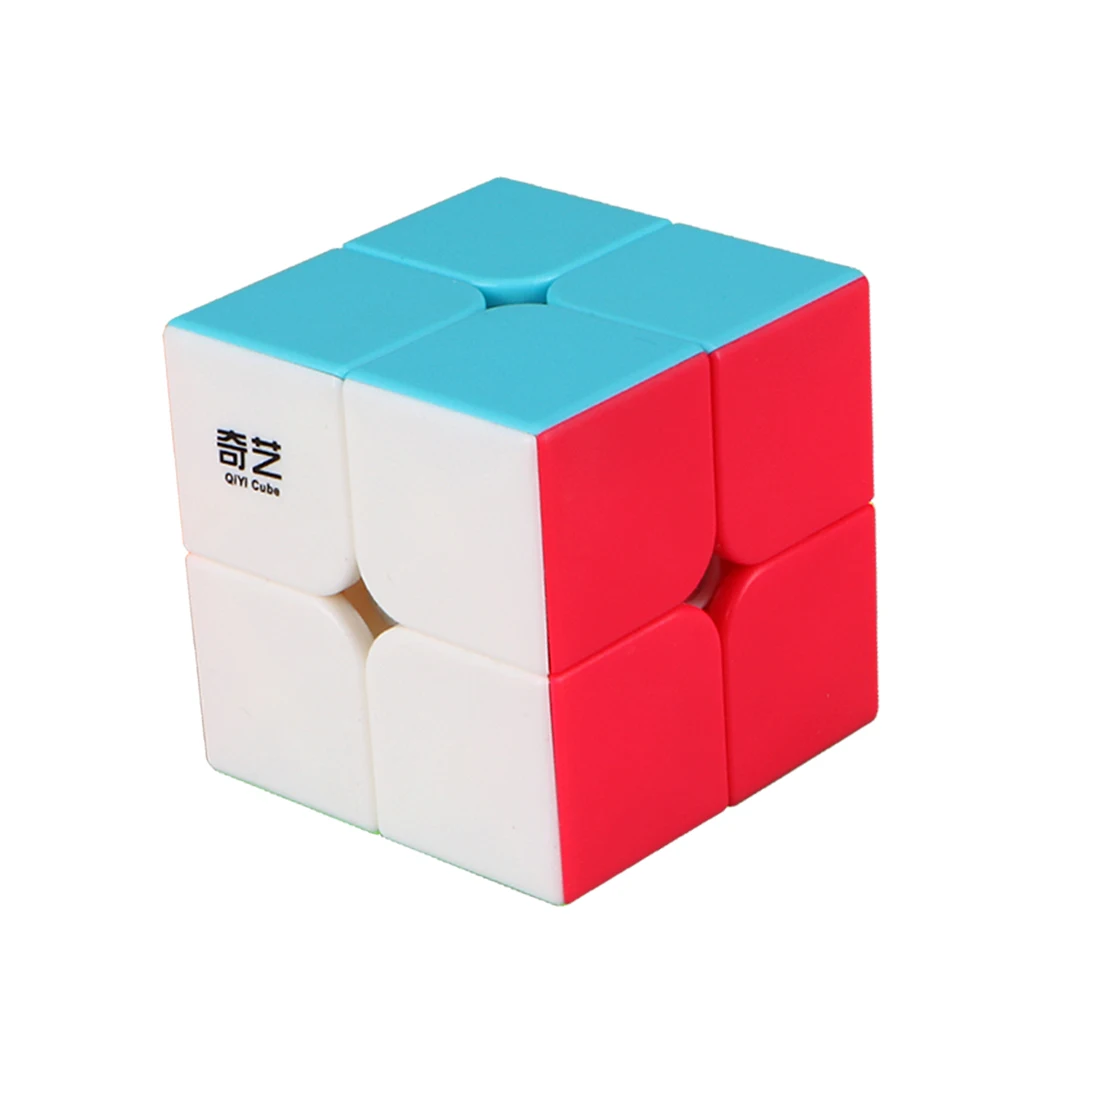 Волшебный куб Qiyi QiDi S 2x2 или 3x3x3, магический куб, скоростной куб, игрушка для детей, подарок, волшебный куб, головоломка, игрушка